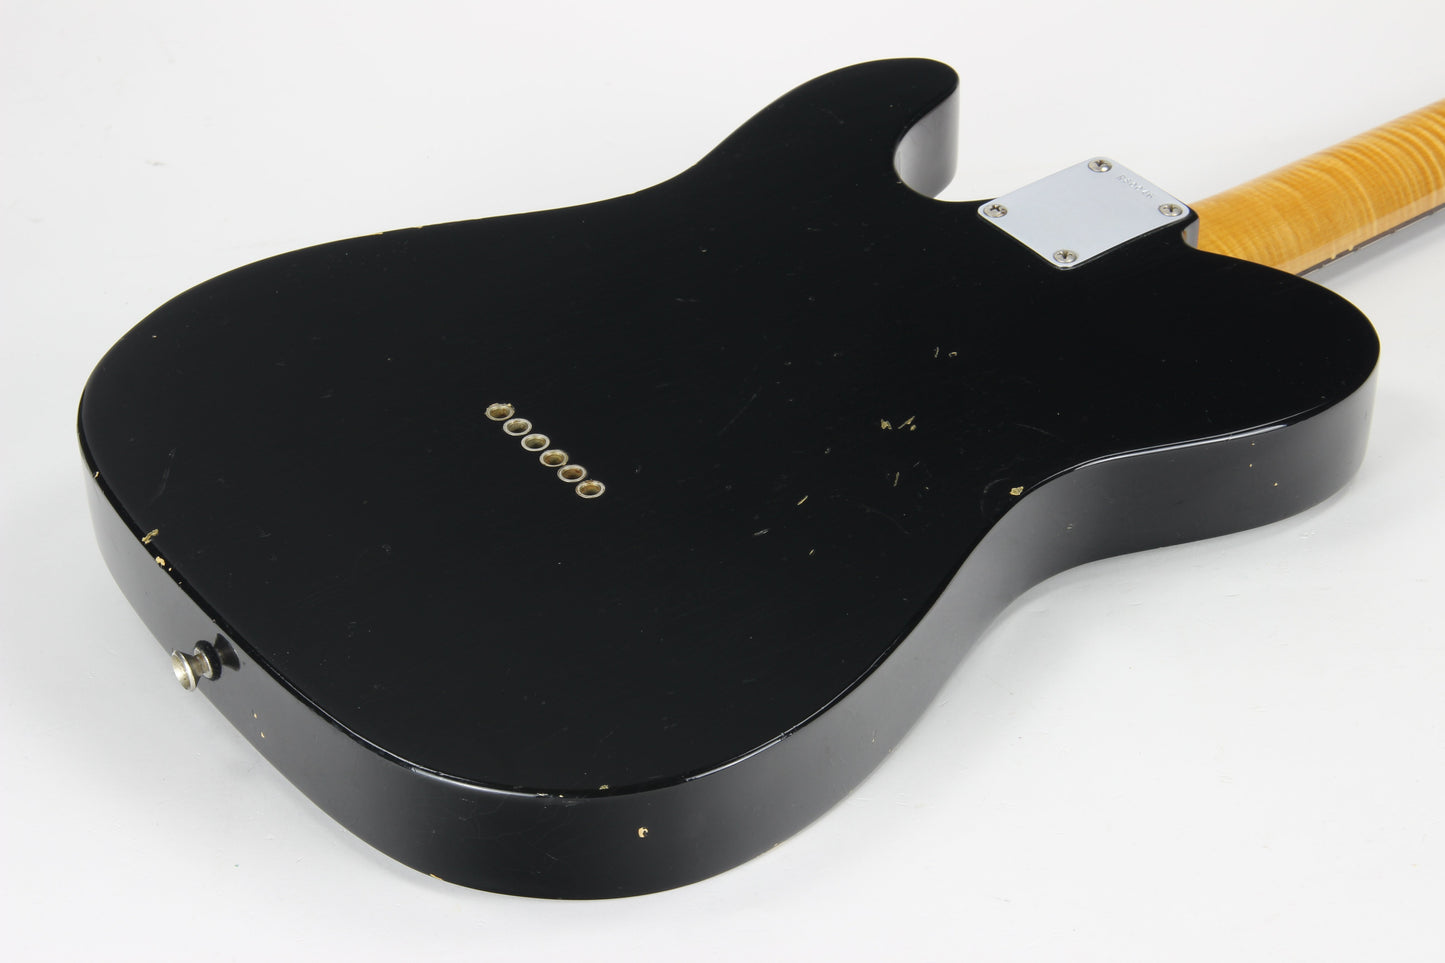 2014 Fender Custom Shop NAMM 1959 Telecaster Journeyman Relic Black - Flame Neck, ULTRA LIGHT '59 Tele!